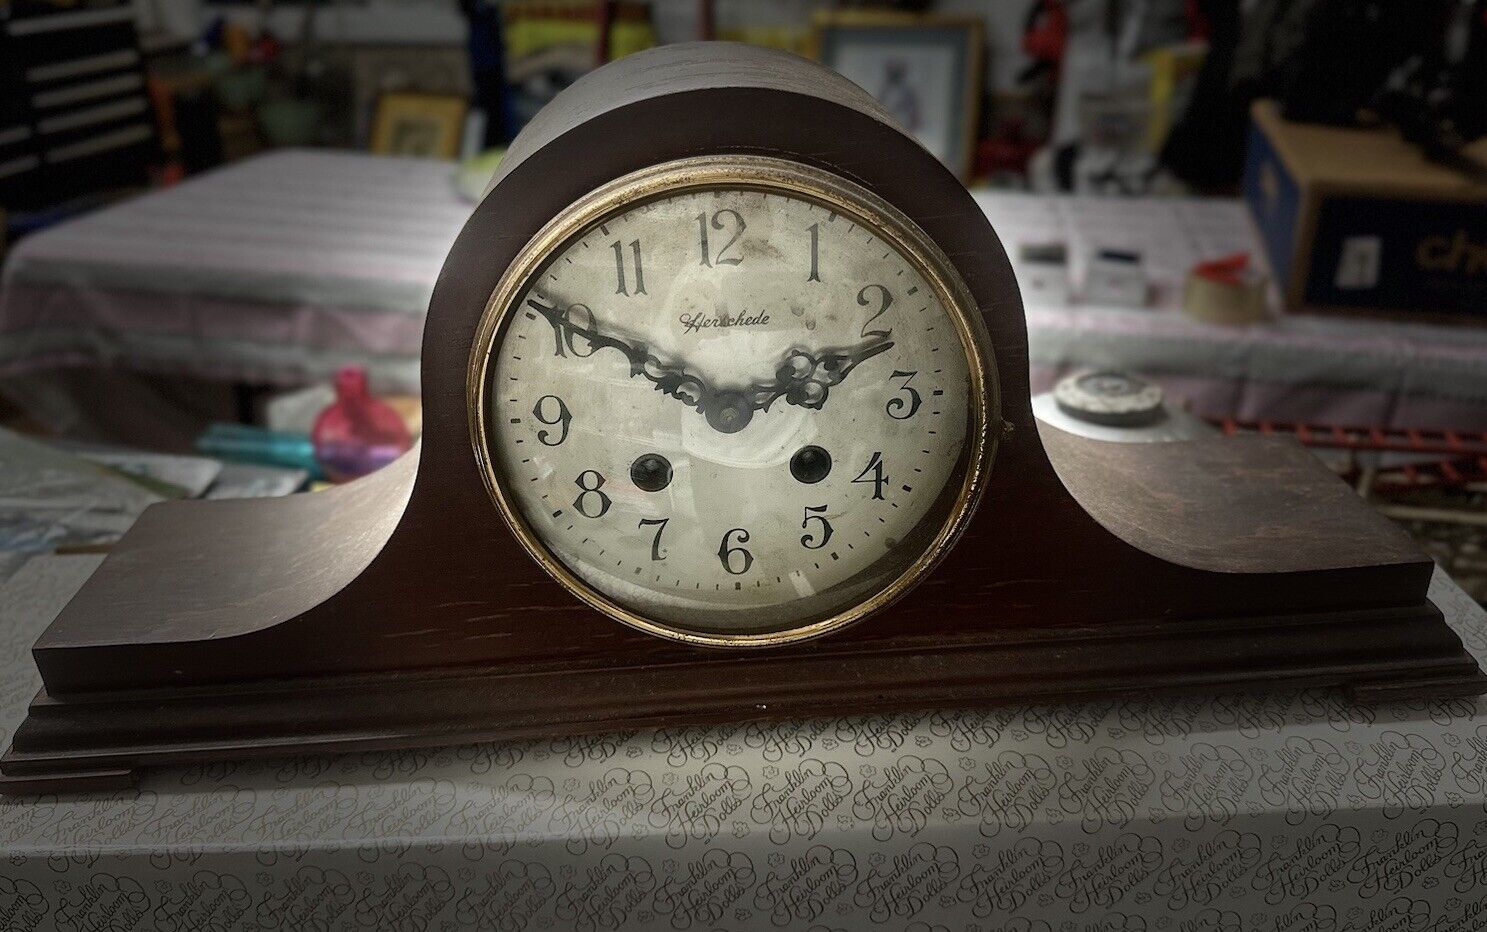 Vintage Herschede Hour and Half Hour Strike Mantel Clock